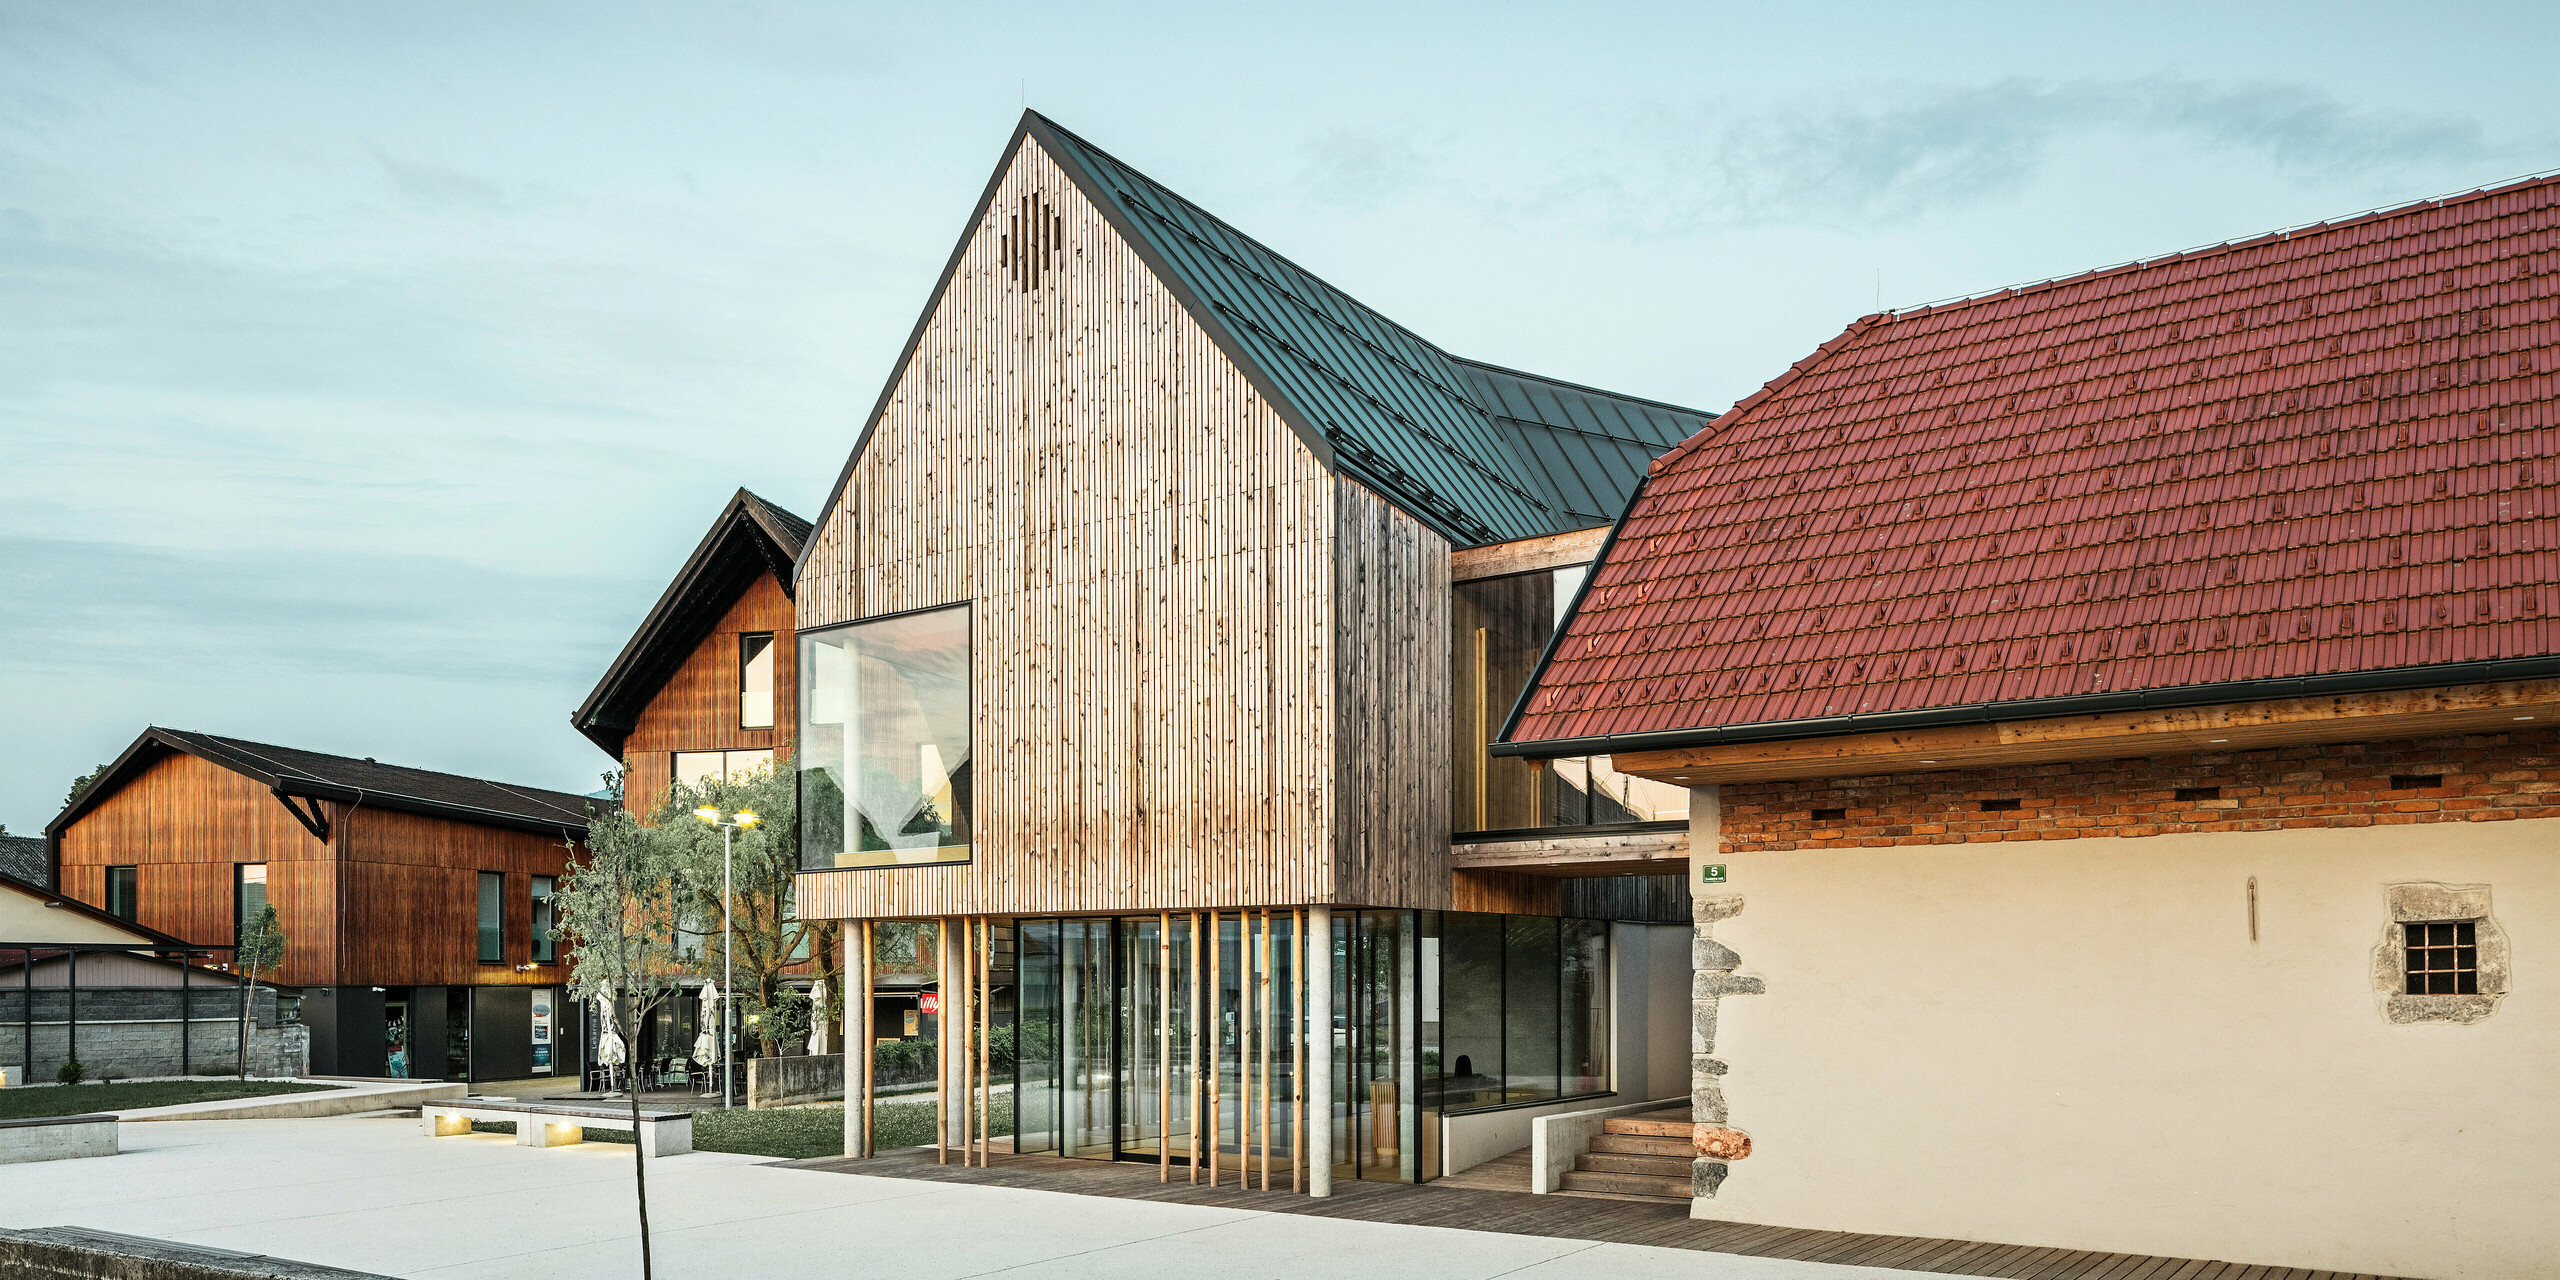 Soumrakový pohled na návštěvnické centrum ve slovinském Ig s nápadnou střechou PREFALZ v barvě P.10 tmavě šedá, která výrazně vyčnívá z okolní tradiční červené taškové střešní krytiny. Spojení starého a nového, reprezentované přilehlou stěnou s malým oknem a moderní dřevěnou konstrukcí s velkými prosklenými plochami, svědčí o promyšlené symbióze regionální tradice a současné architektury. Stylové osvětlení podtrhuje lákavou atmosféru vstupního prostoru, jak je prezentováno v PREFARENZEN book 2023.